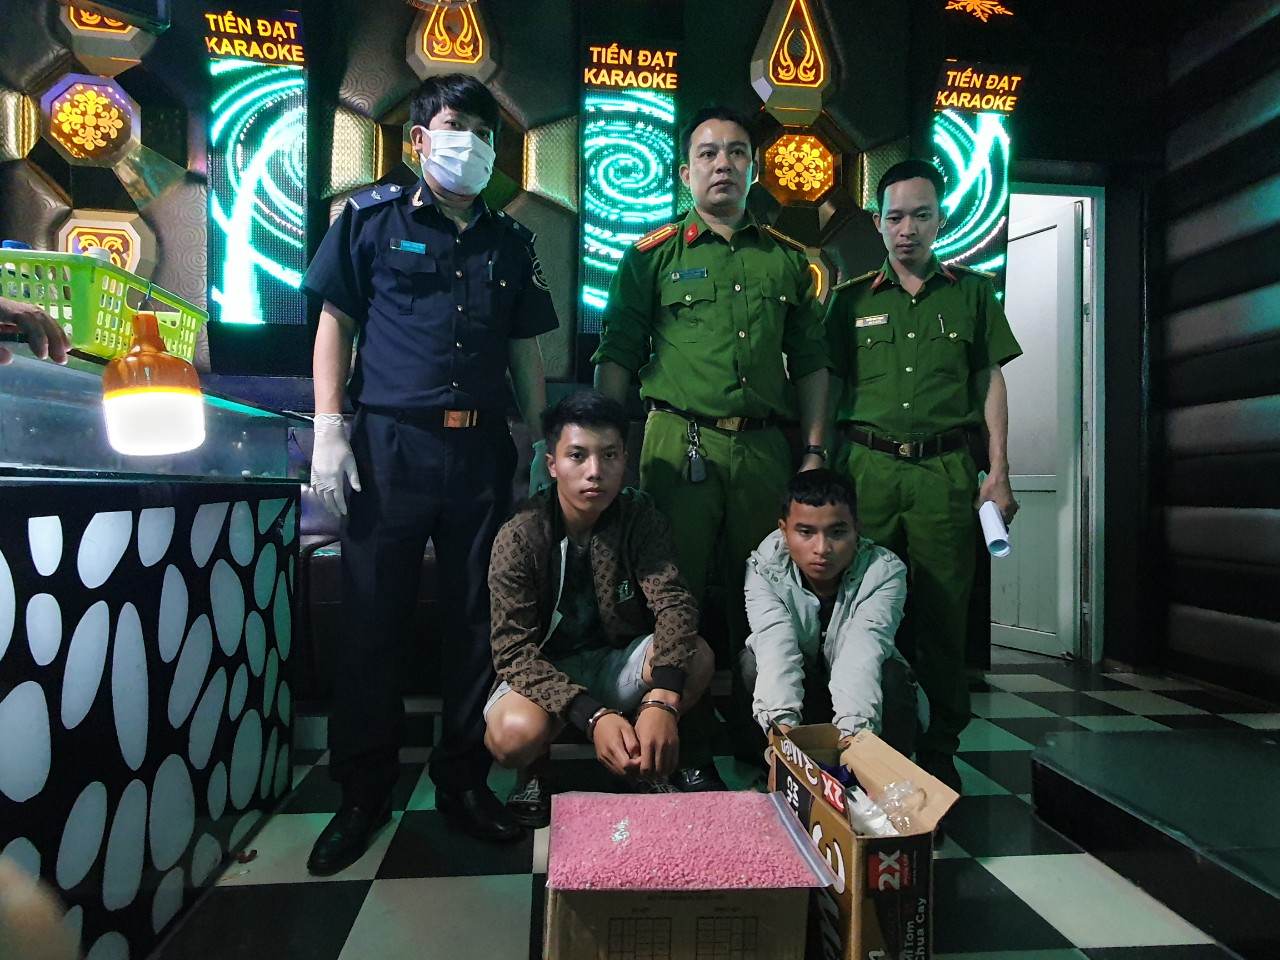 Bắt 2 nghi phạm người Lào vận chuyển 18.000 viên ma túy - Ảnh 1.